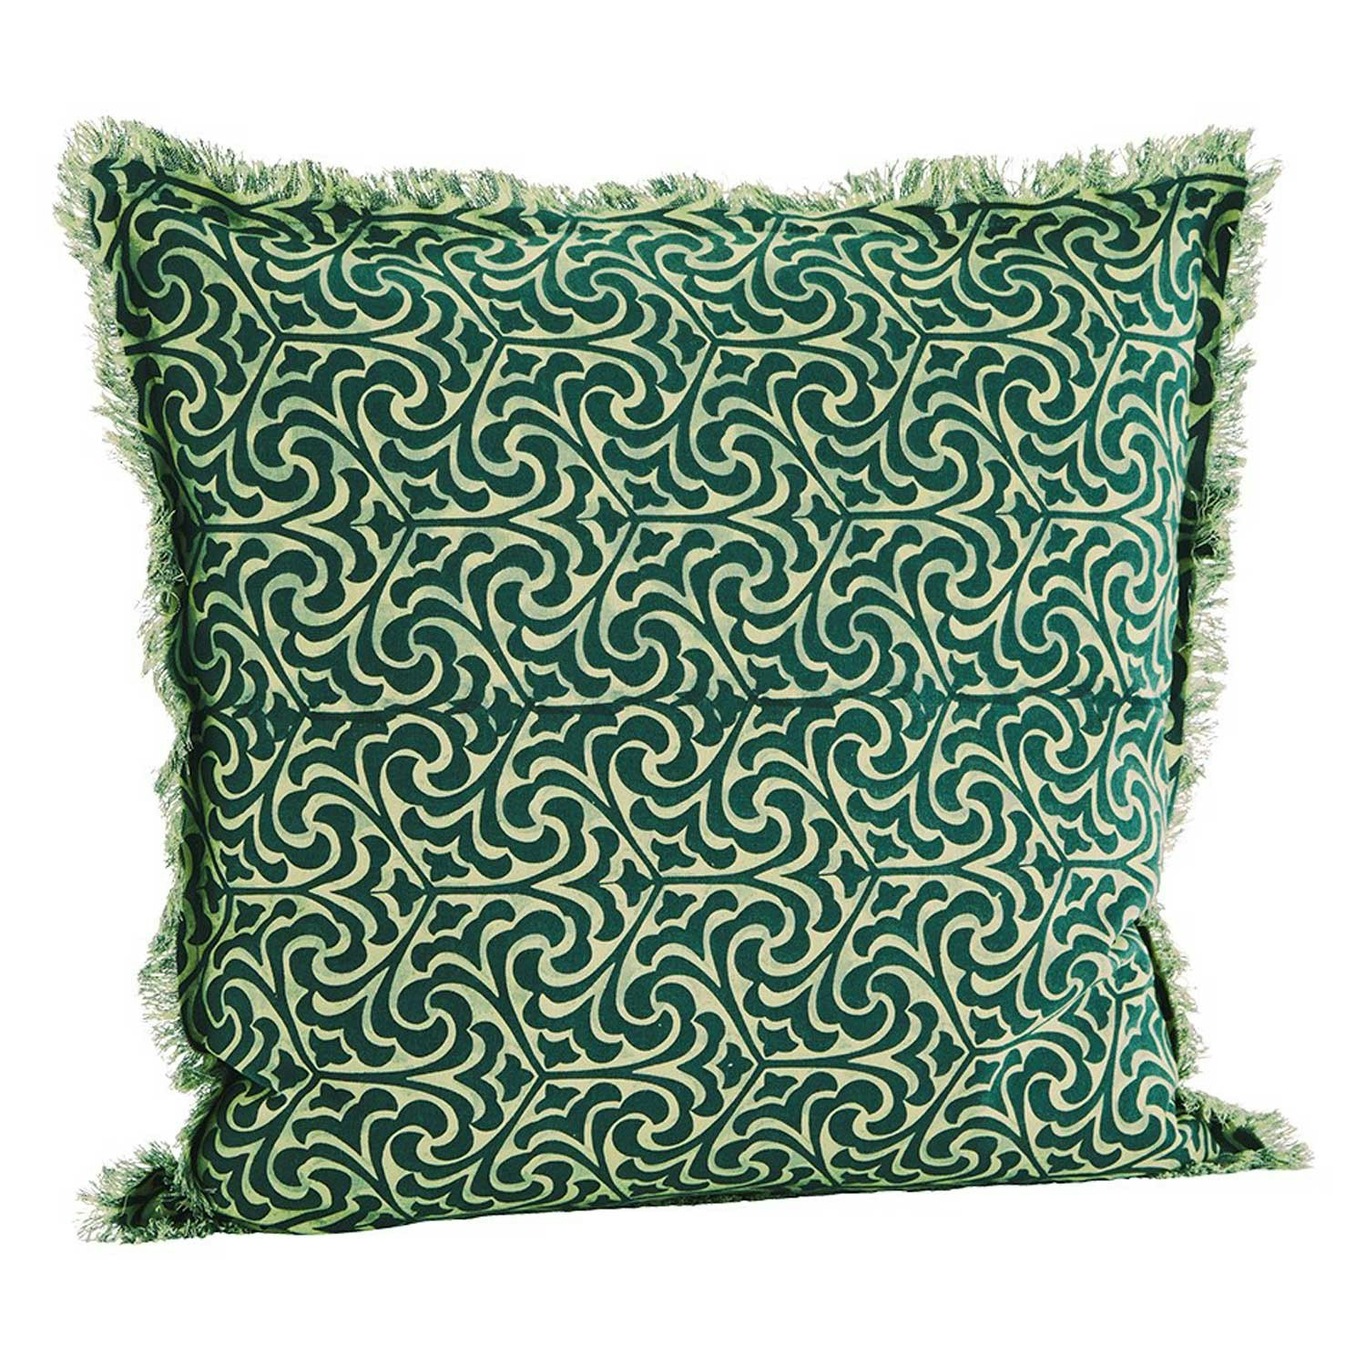 Tyynynpäällinen Hapsuilla 50x50 cm, Teal/Vihreä